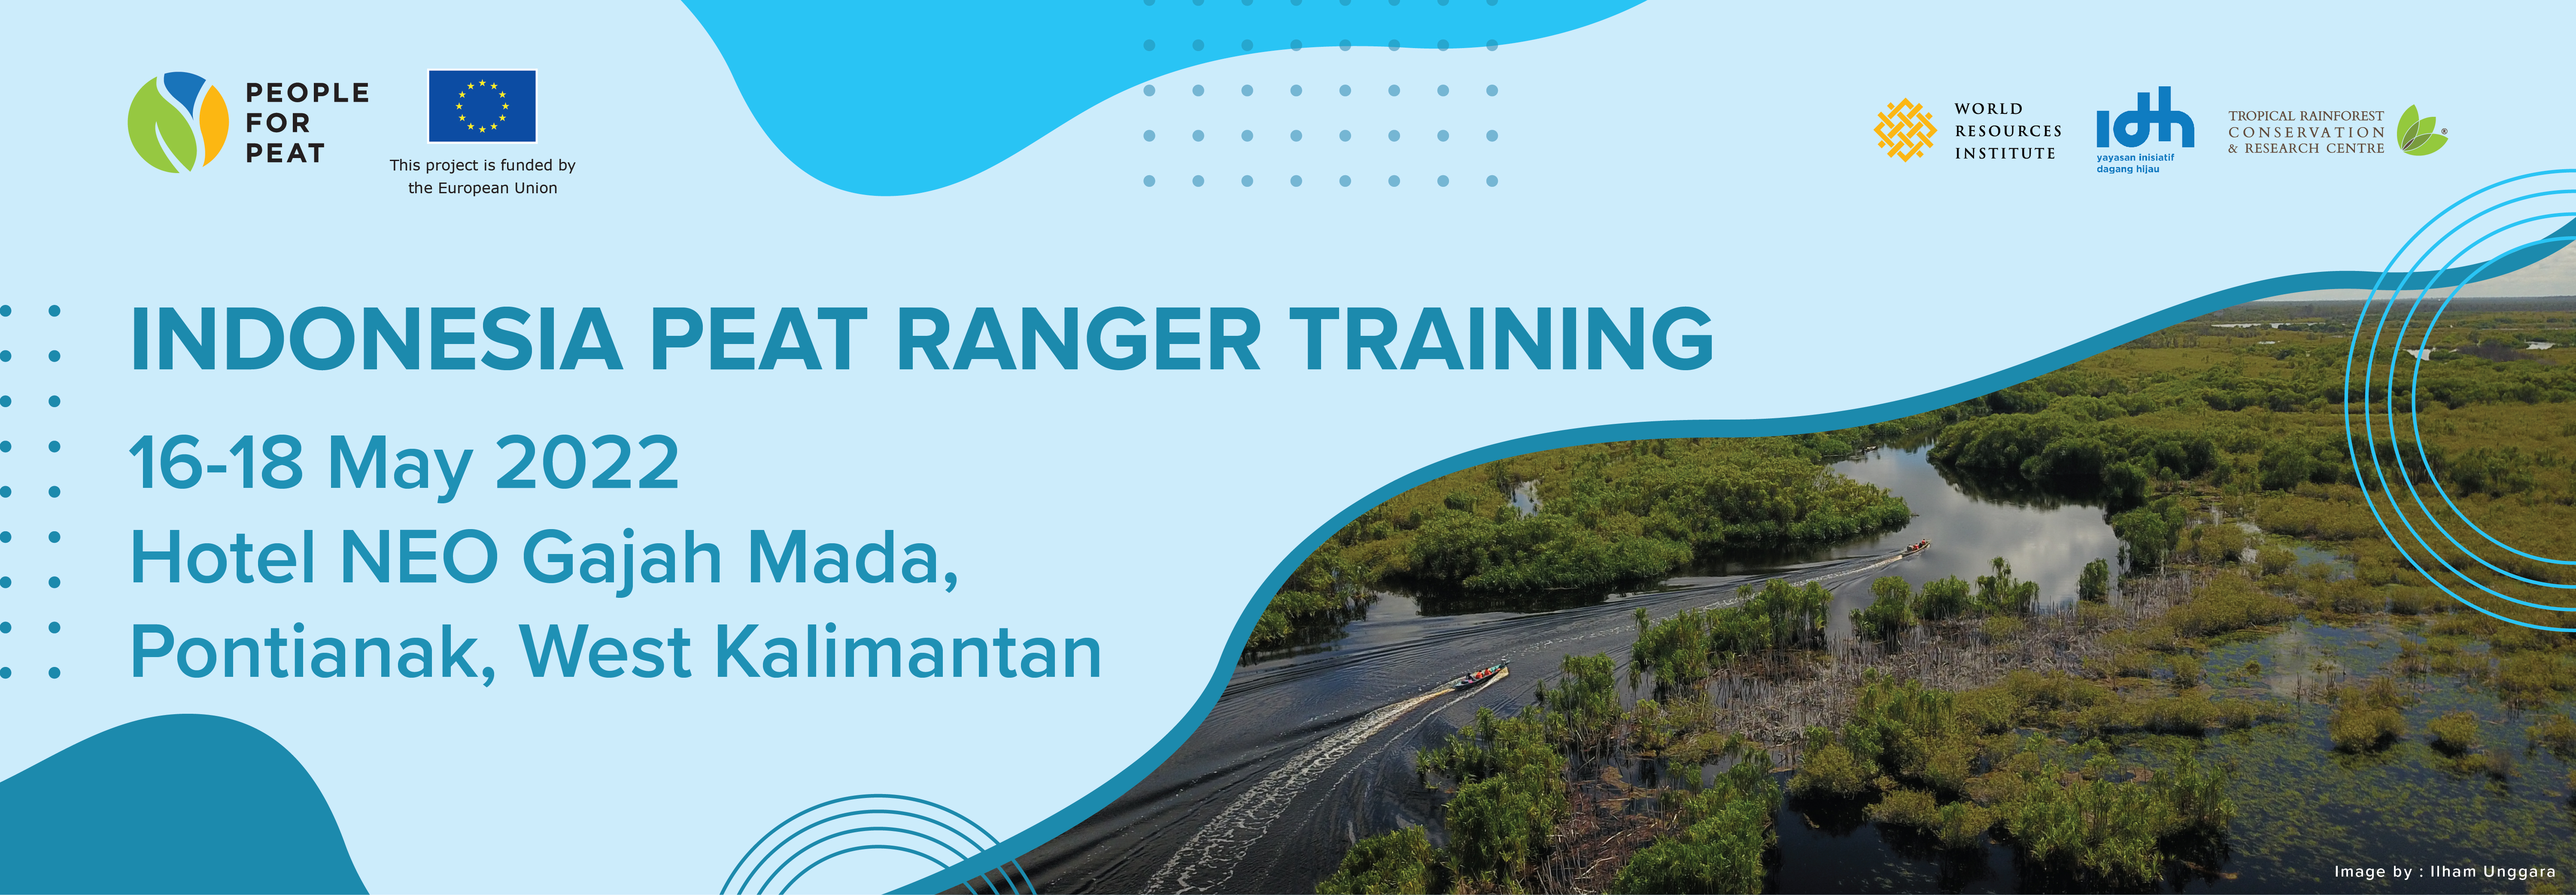 Indonesia Peat Ranger Training